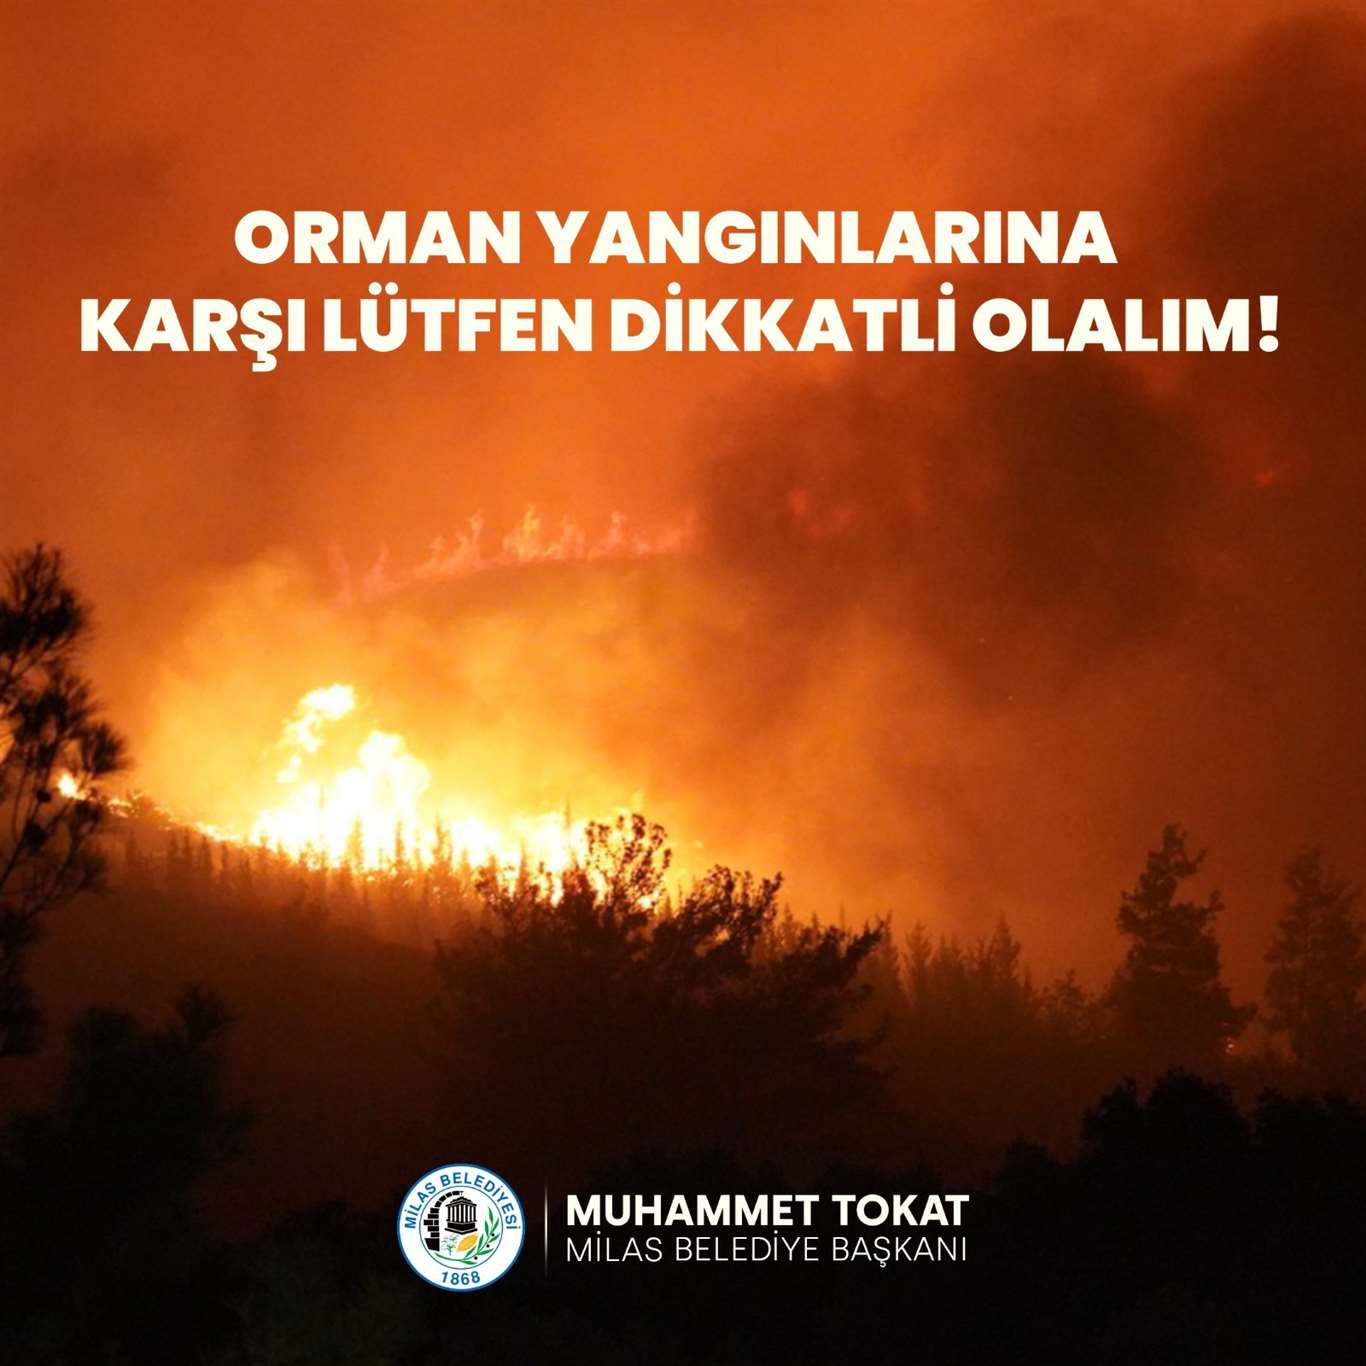 Milas'ta belediyeden orman yangınları için duyarlılık çağrısı haberi